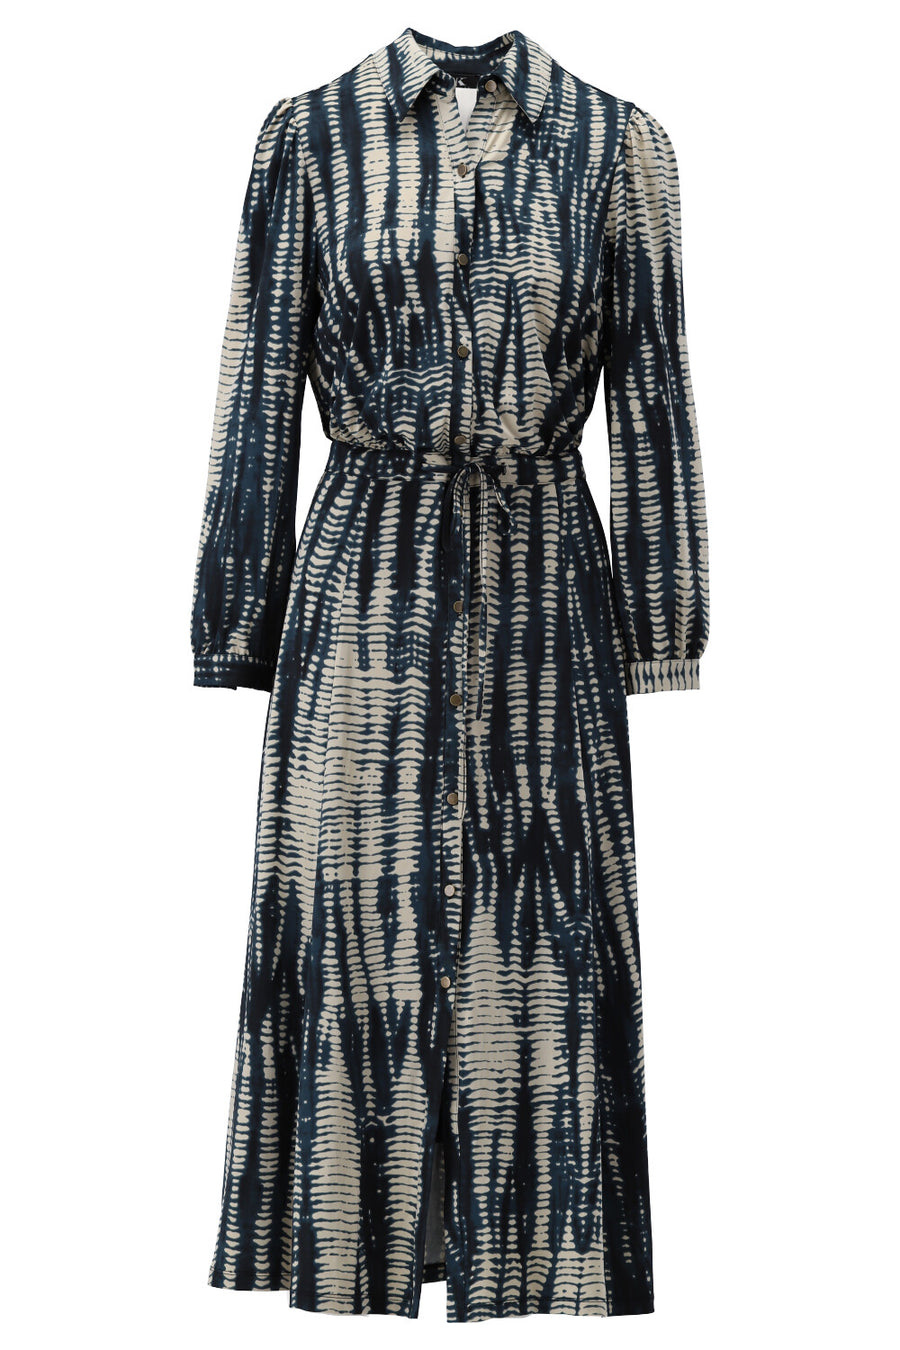 K-Design - Half lang kleedje, met print en riem (V317)